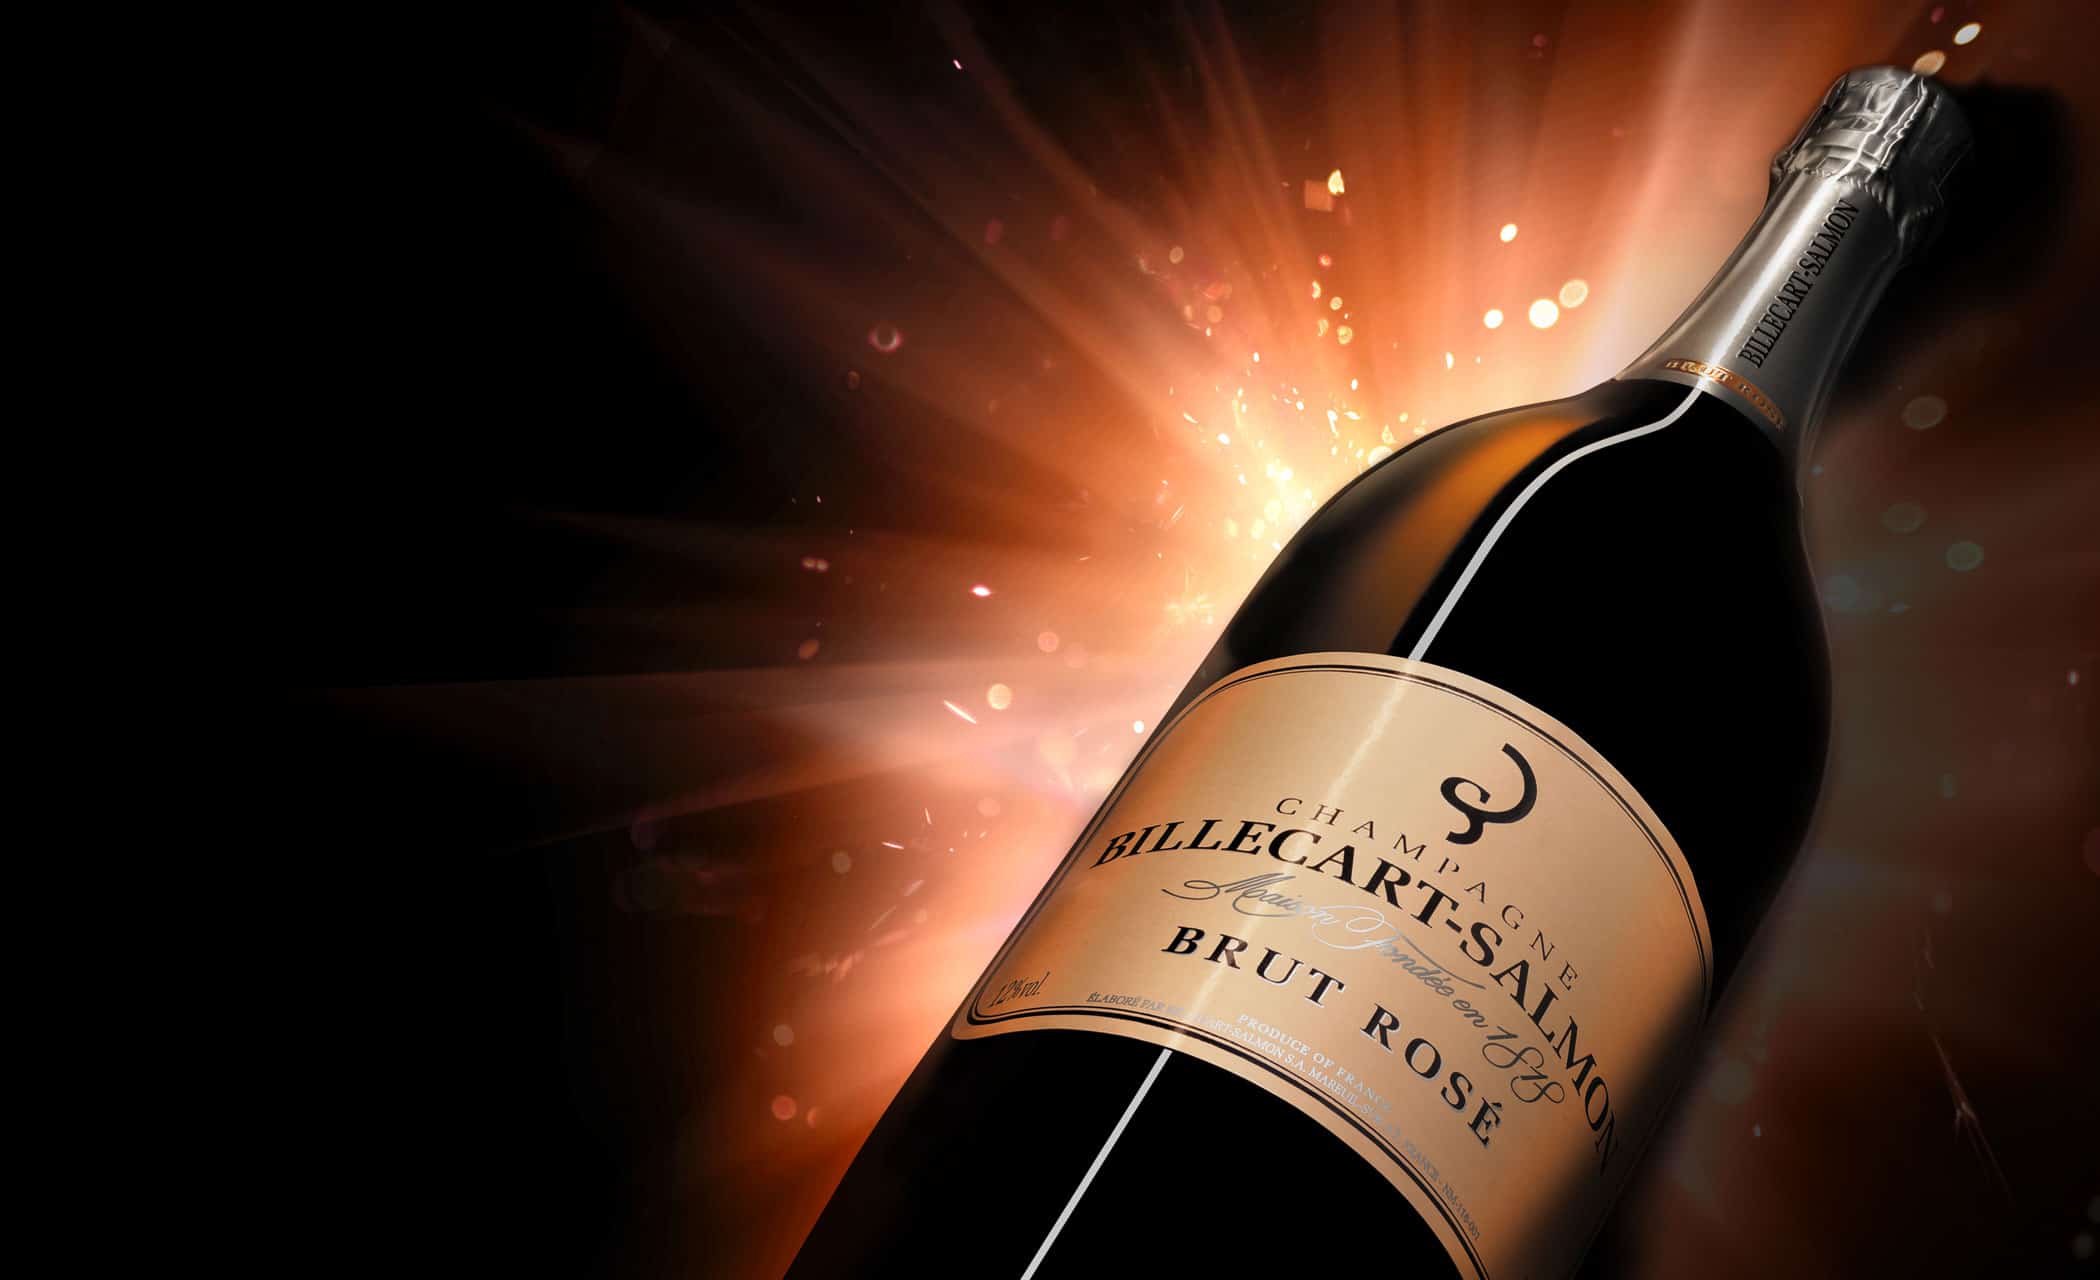 Billecart-Salmon香槟酒-玫瑰酒